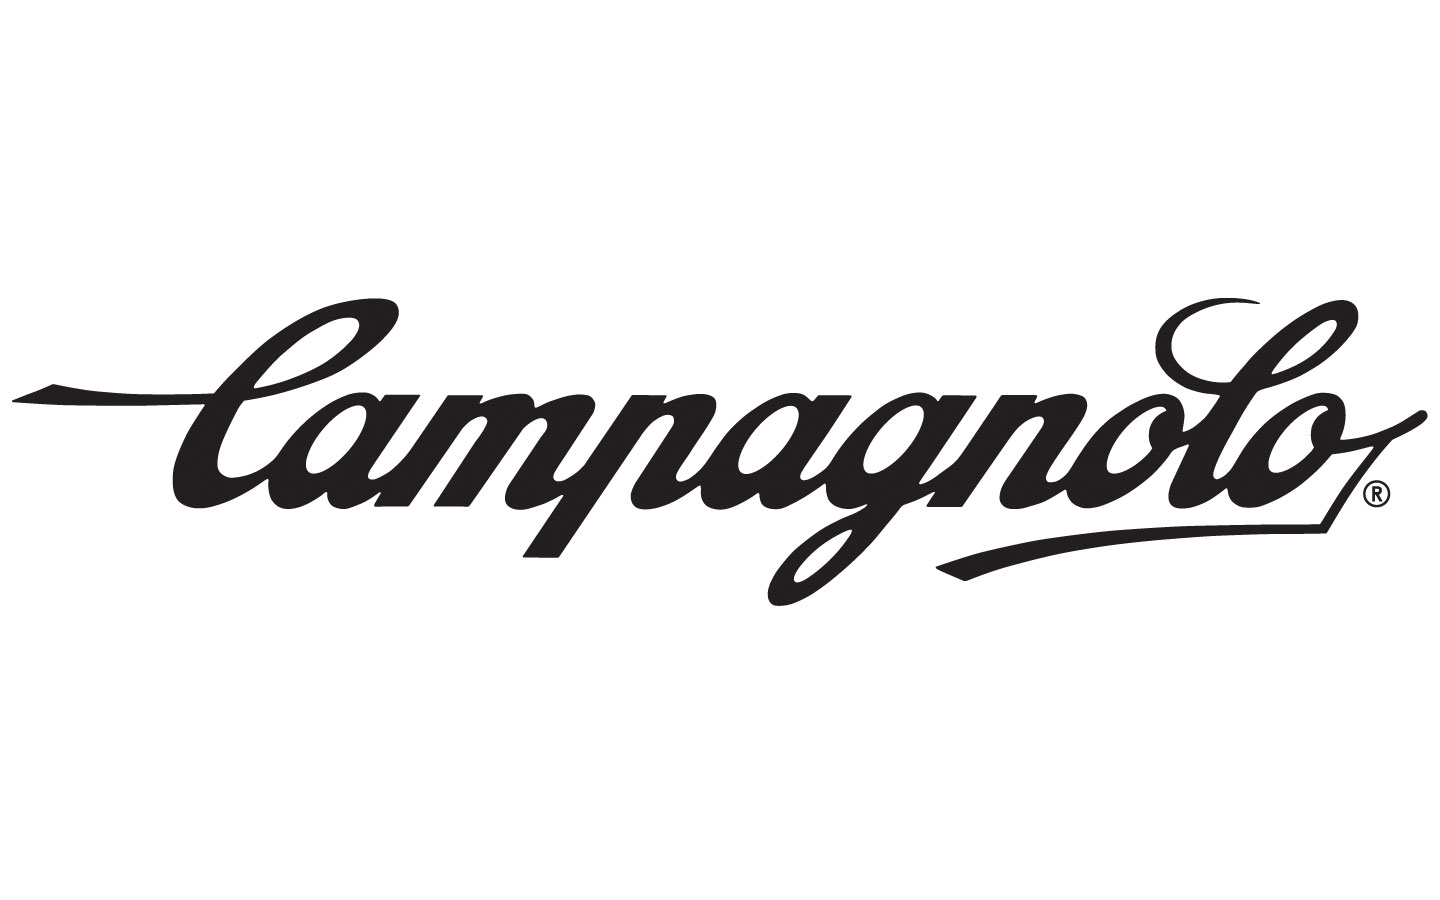 Logo Campagnolo